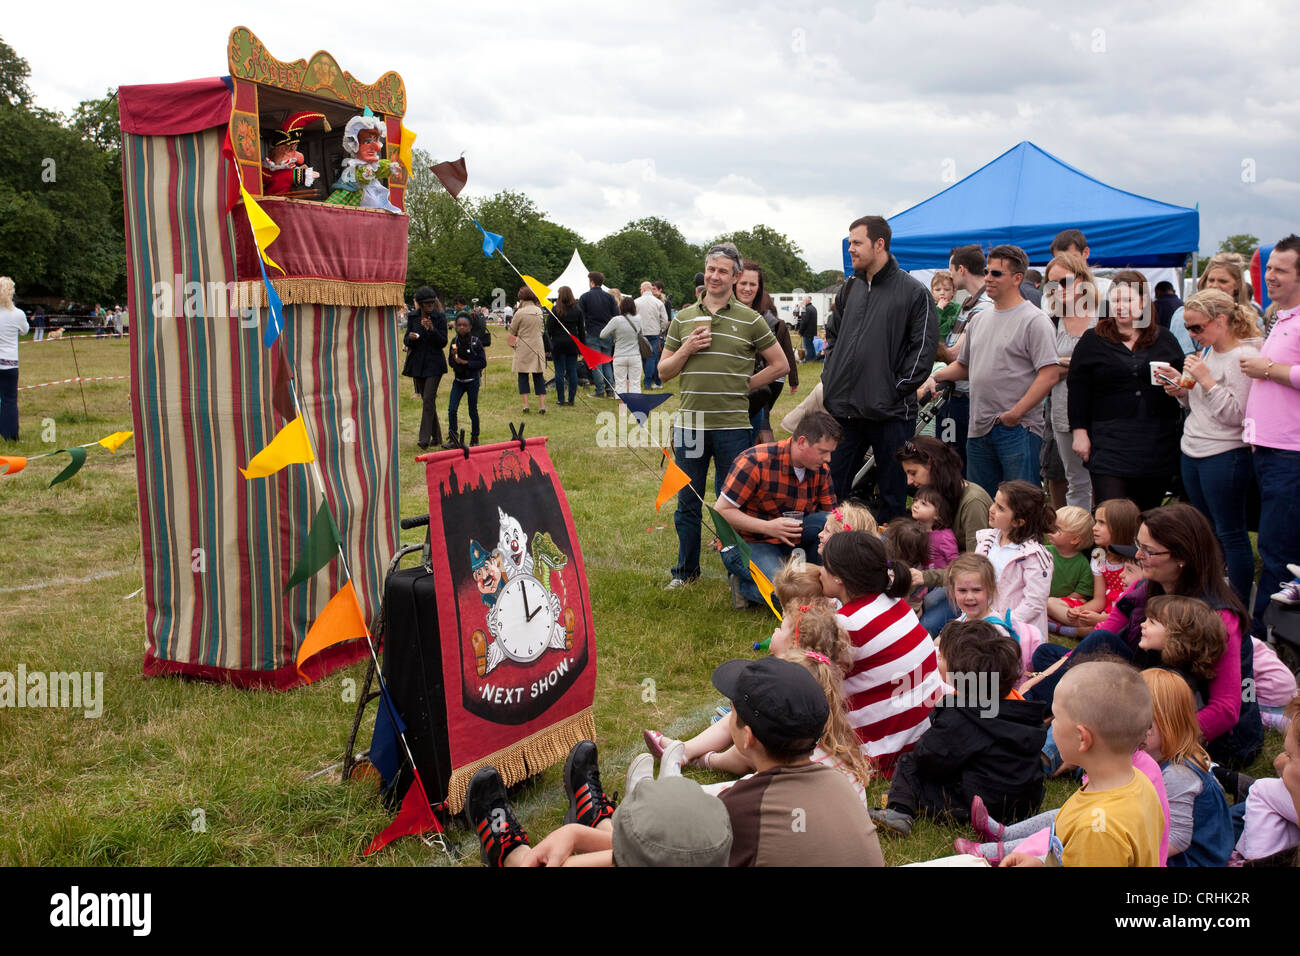 Punch & Judy puppet show at summer fair. Stock Photo